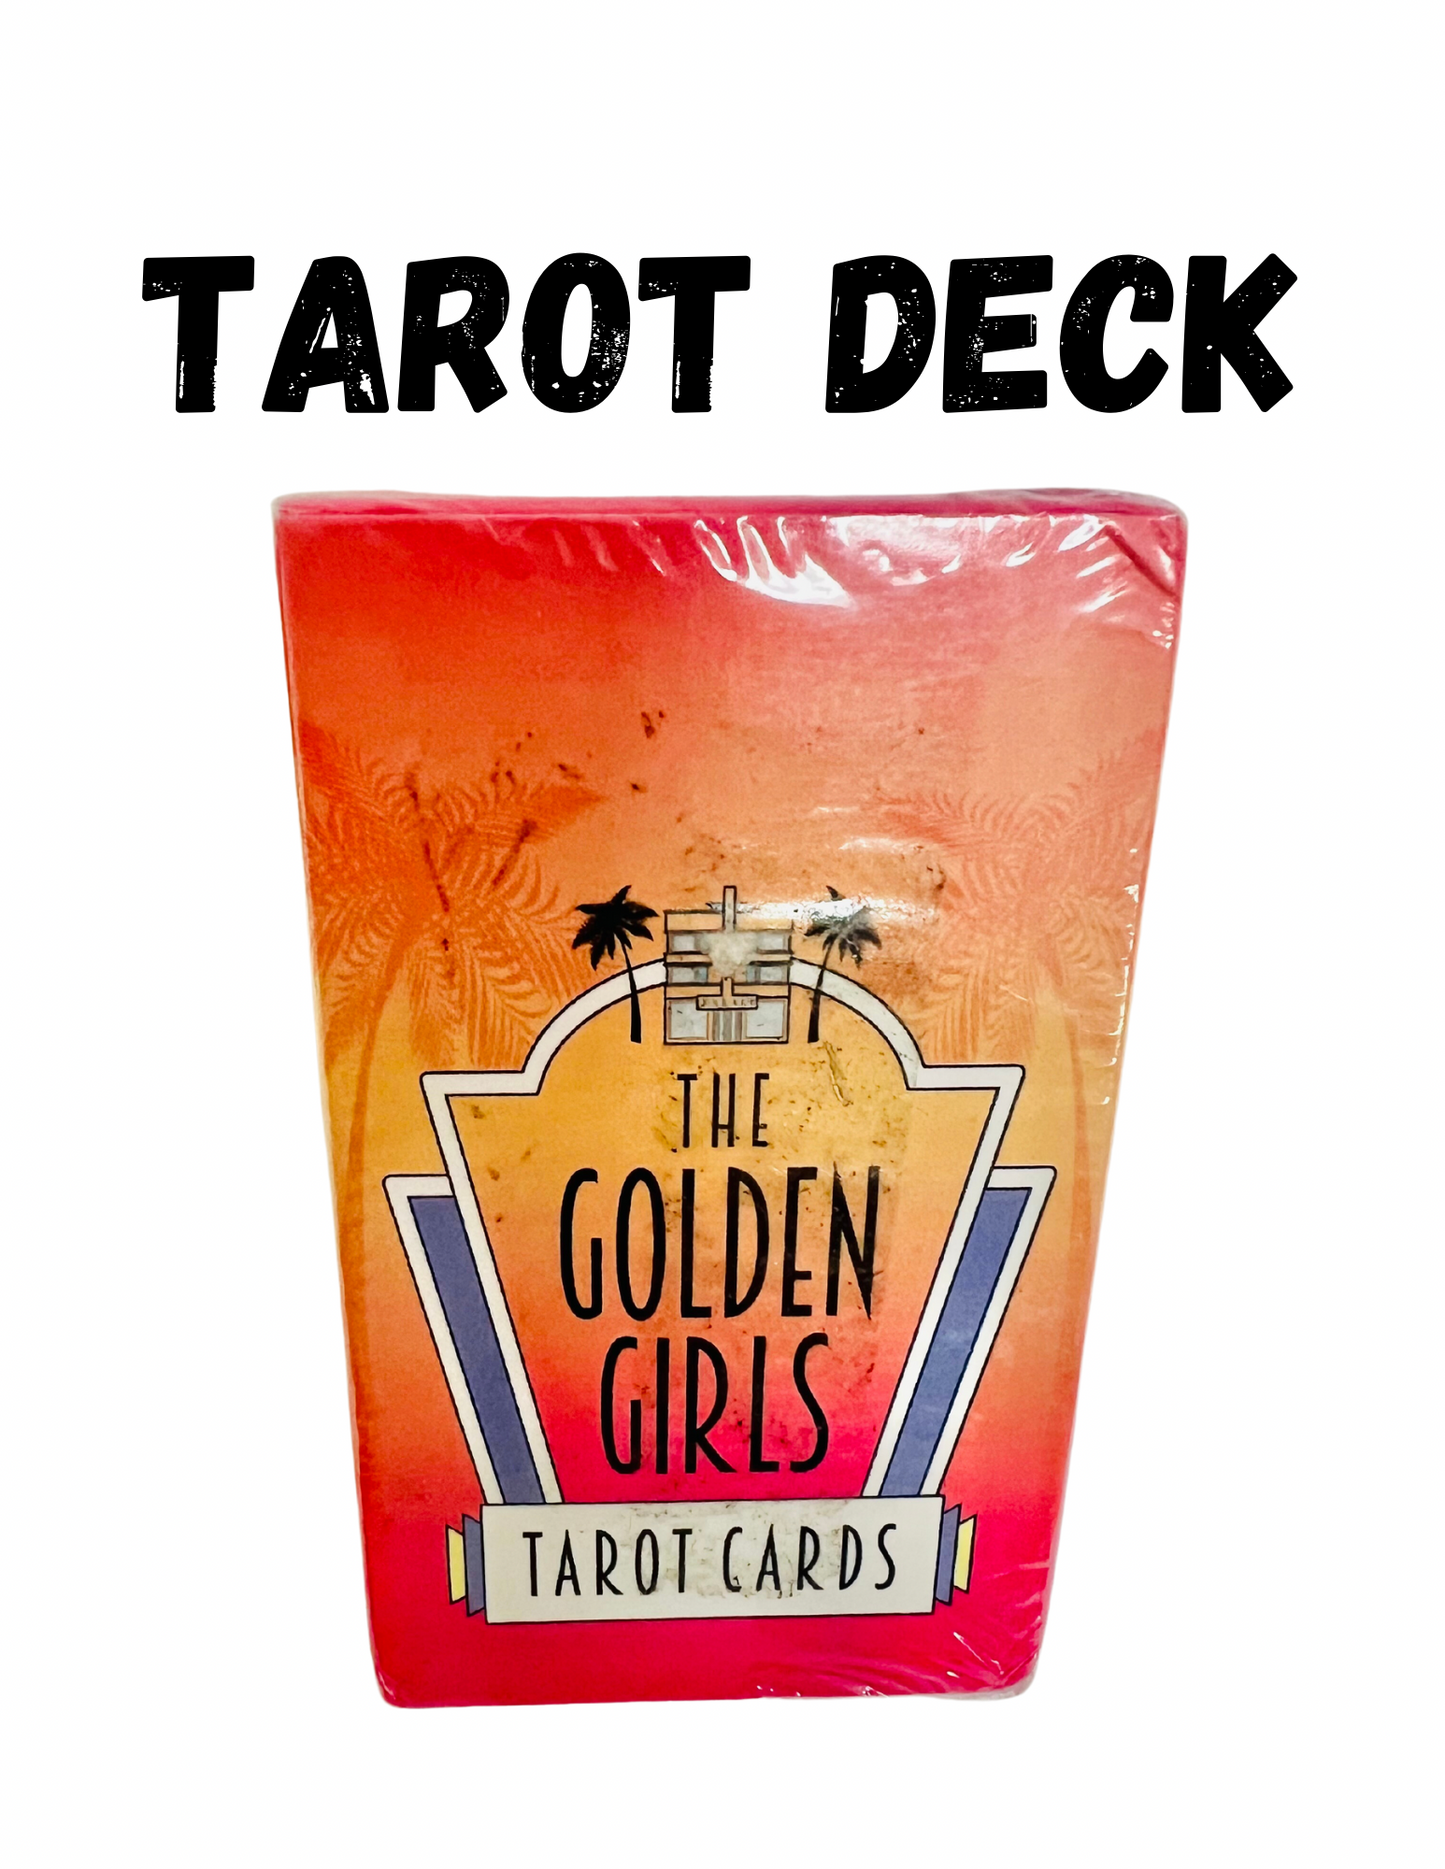 The Golden Girls Tarot Deck